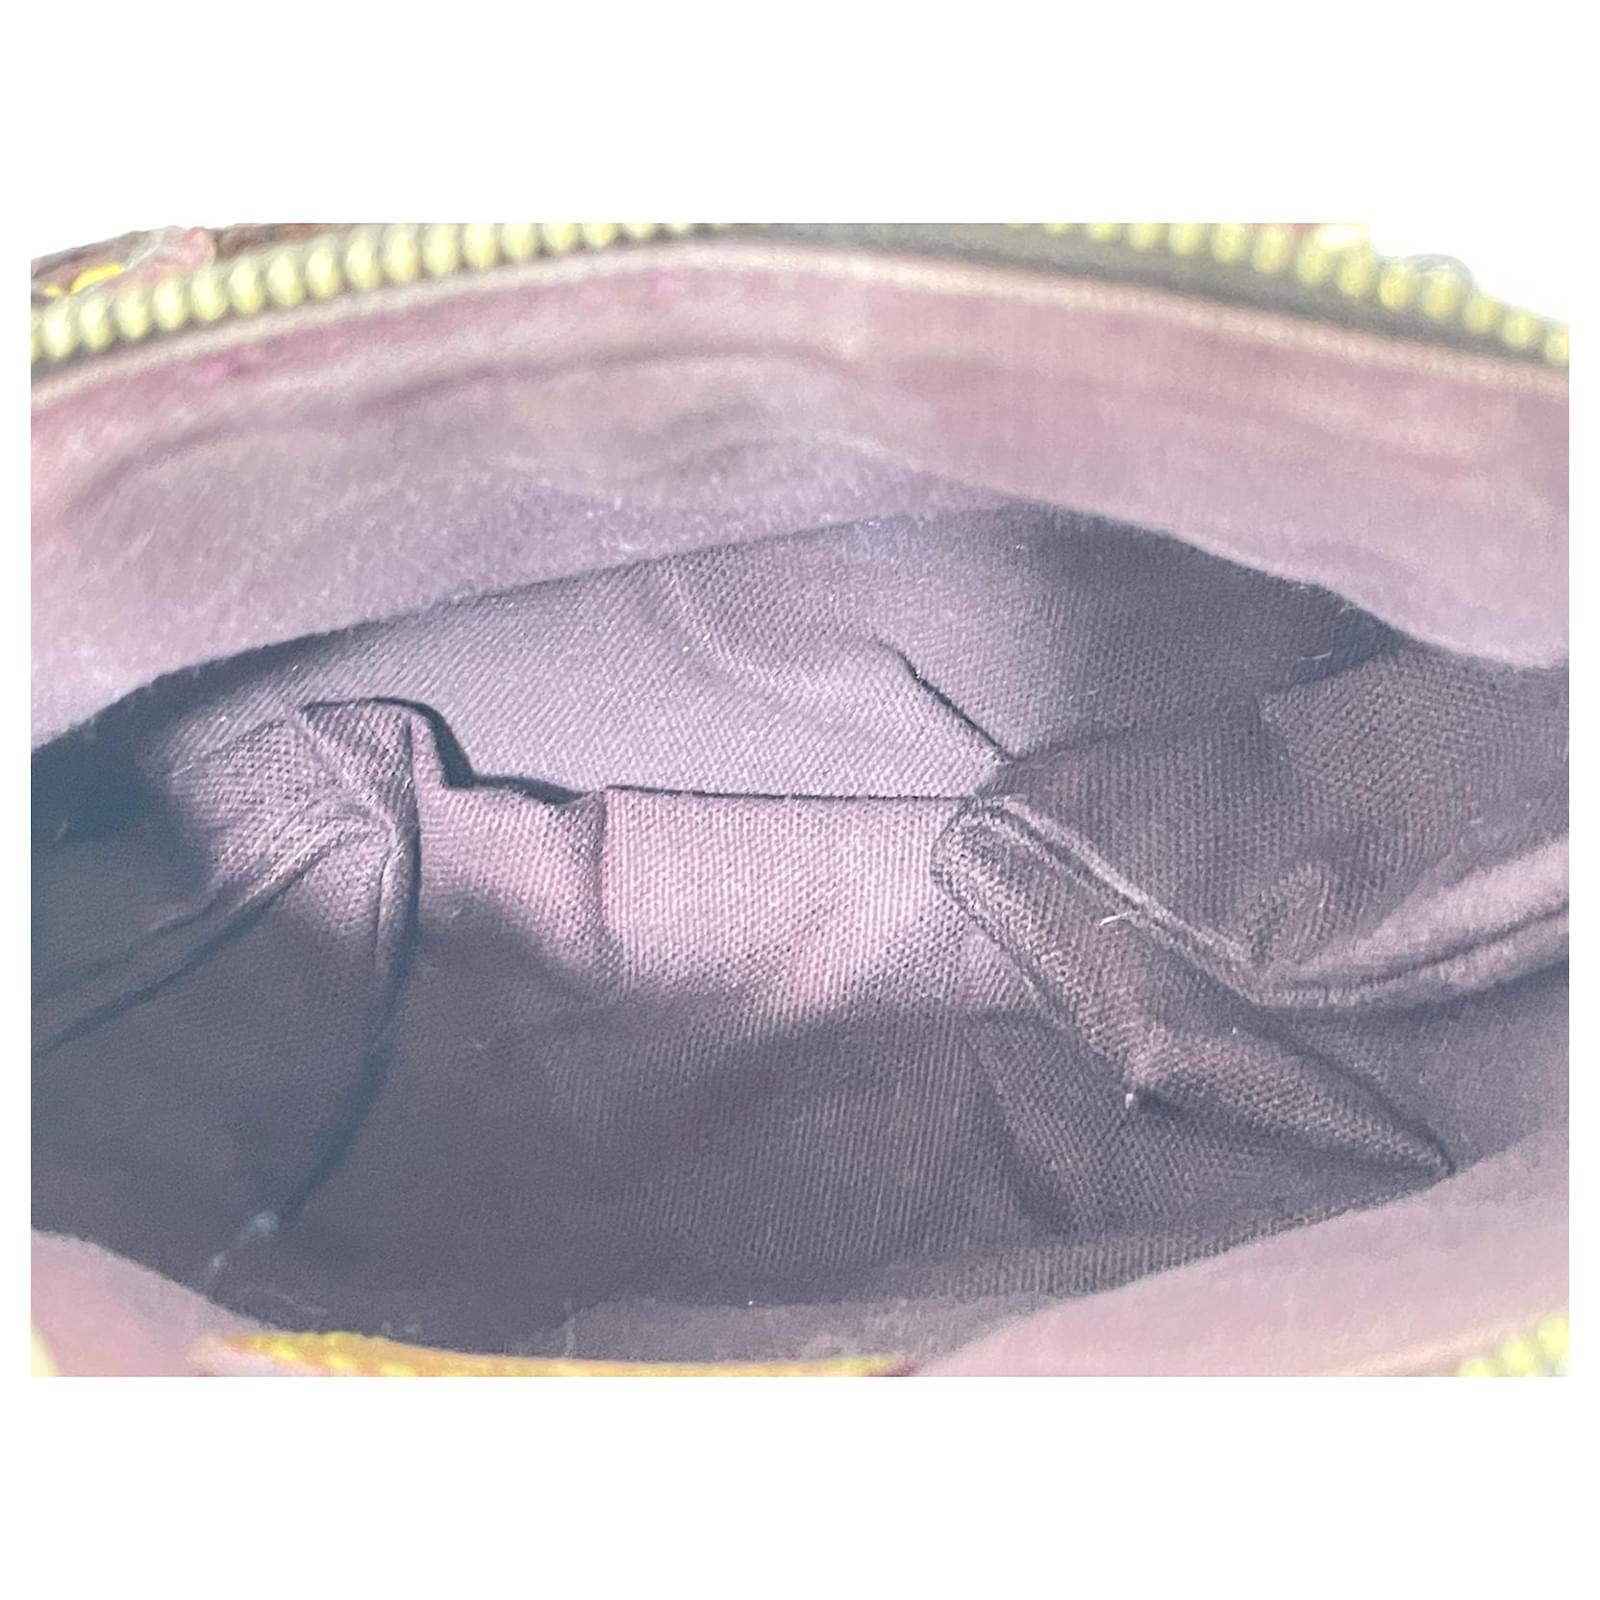 Nano noé cloth handbag Louis Vuitton Brown in Cloth - 36148606